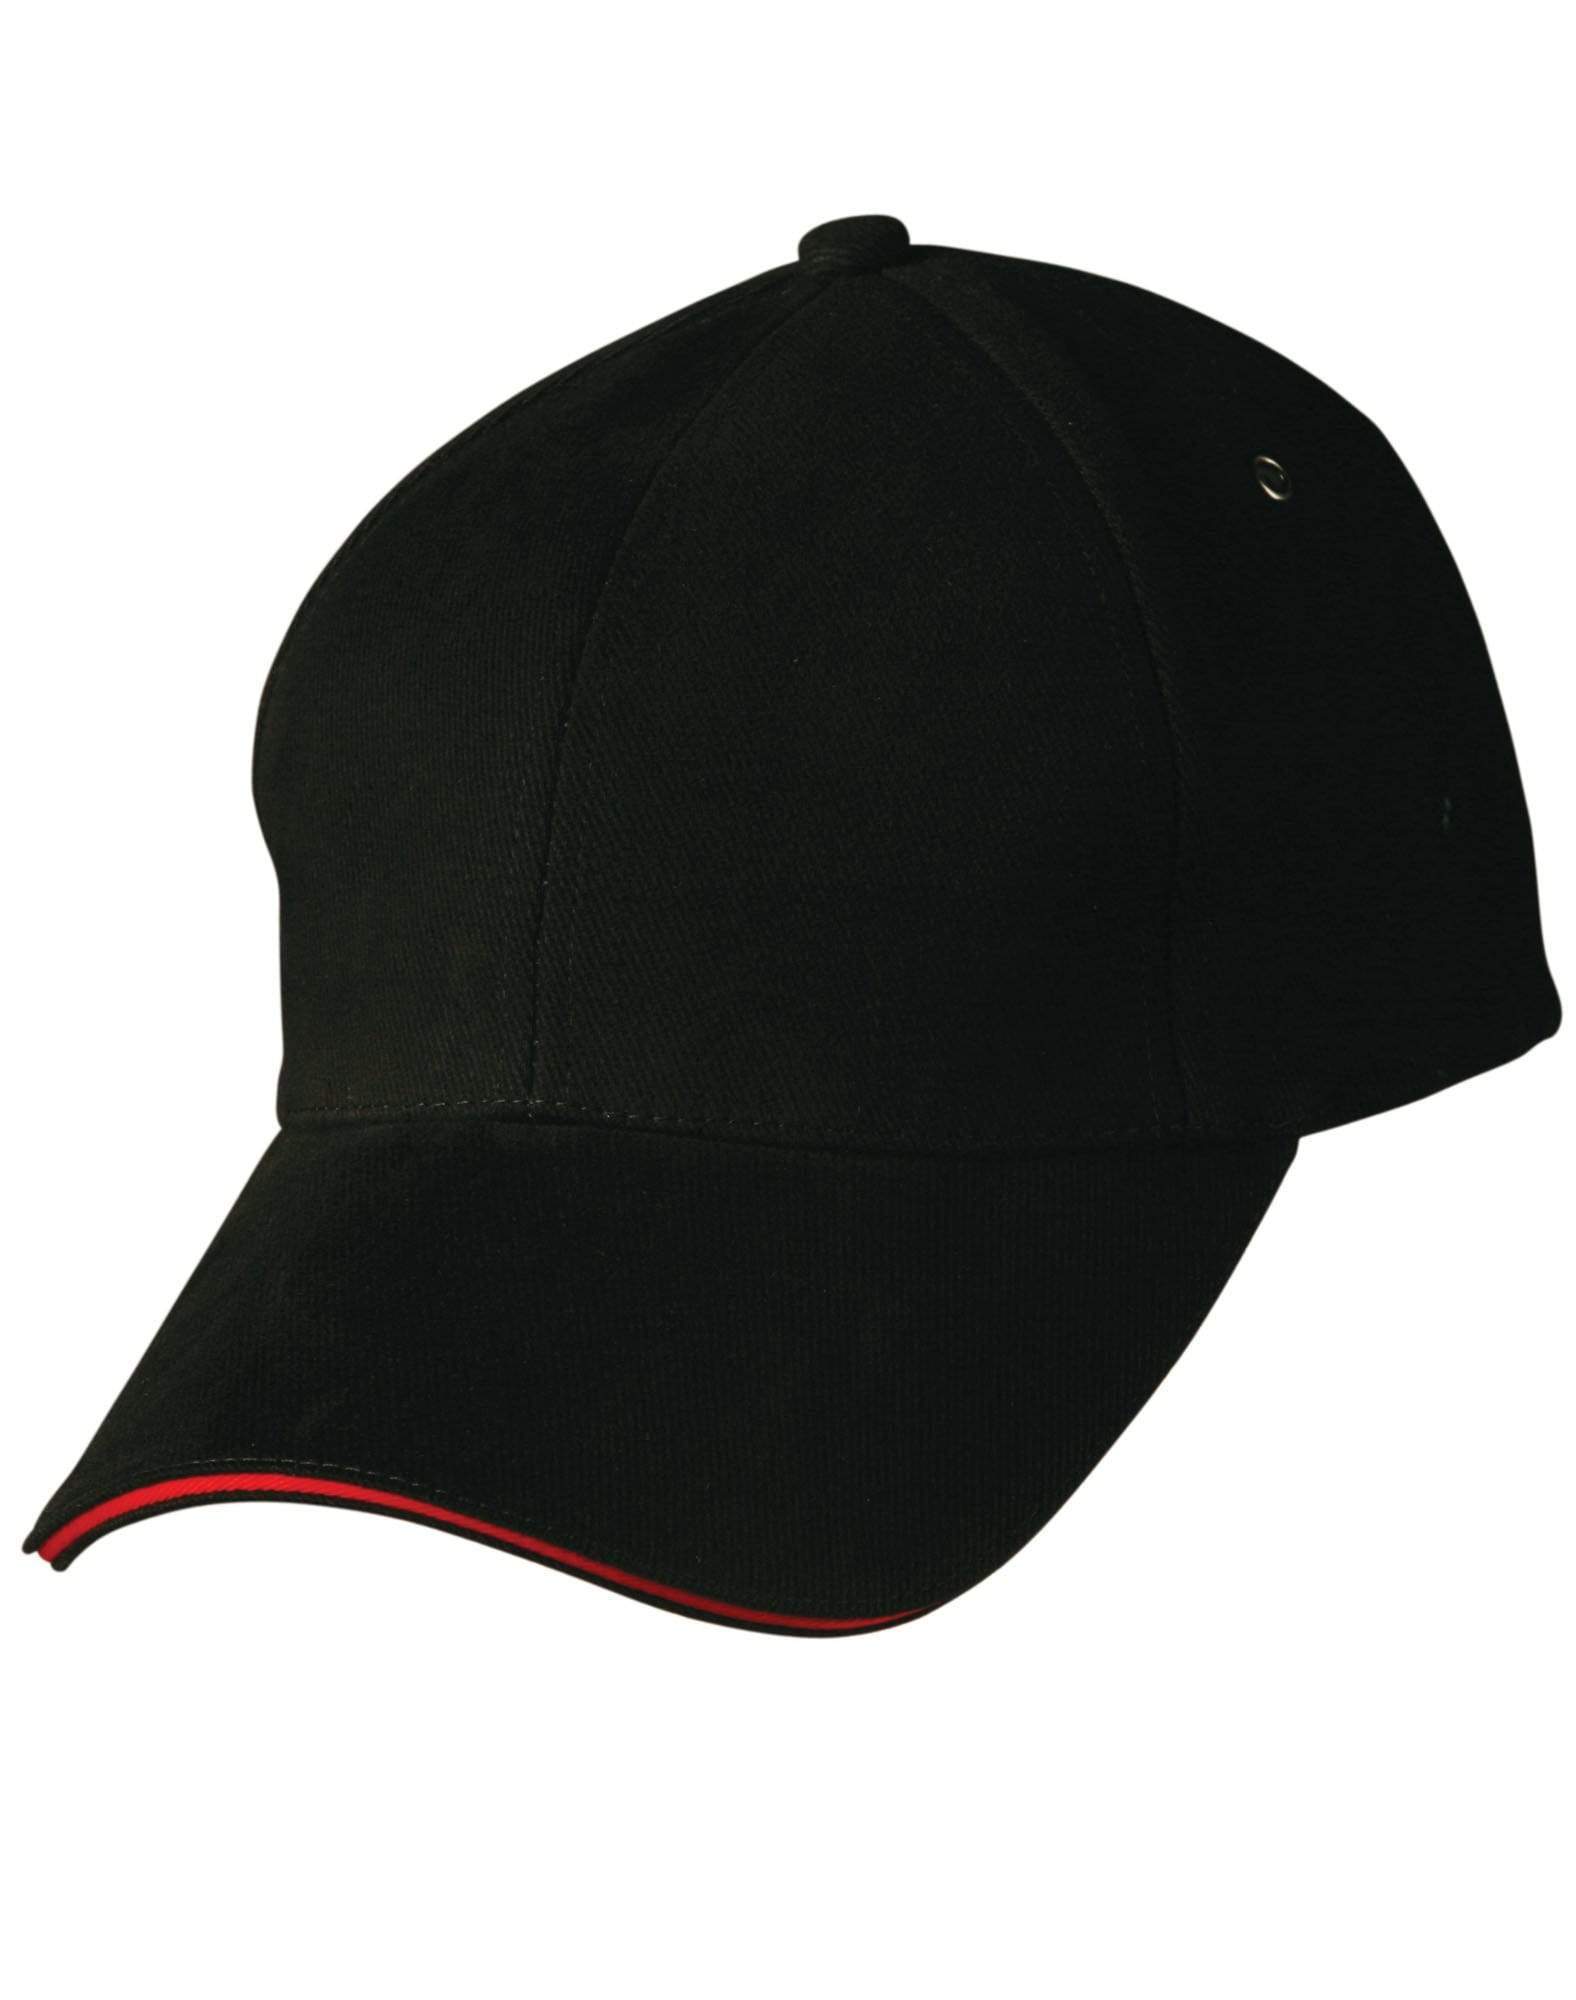 Sandwich Peak Cap Ch18 Active Wear Winning Spirit Black/Red One size fits most 